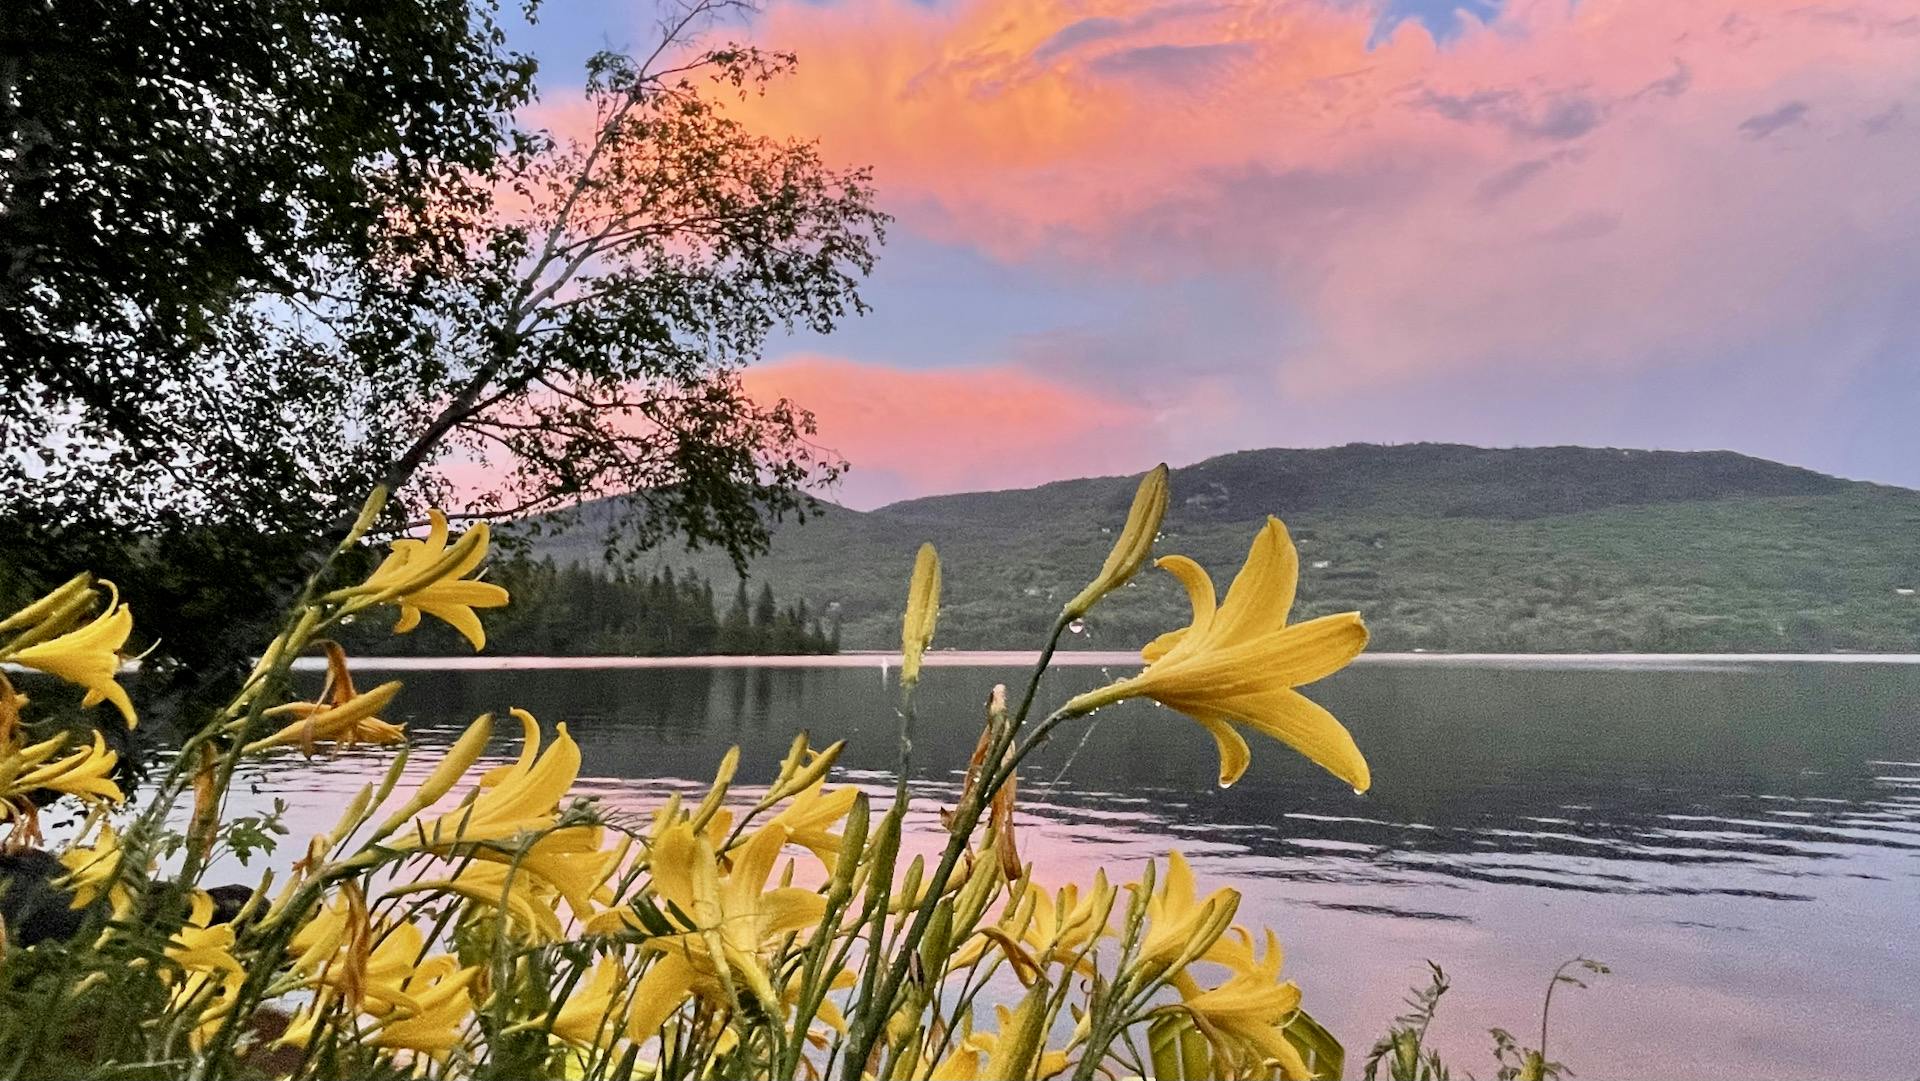 Description de l'image: prise au mois de juin 2021, la photo montre un coucher de soleil rose-mauve après un orage, avec une montagne, des forets et un lac dans l'arrière-plan, et des lys jaunes au premier plan.